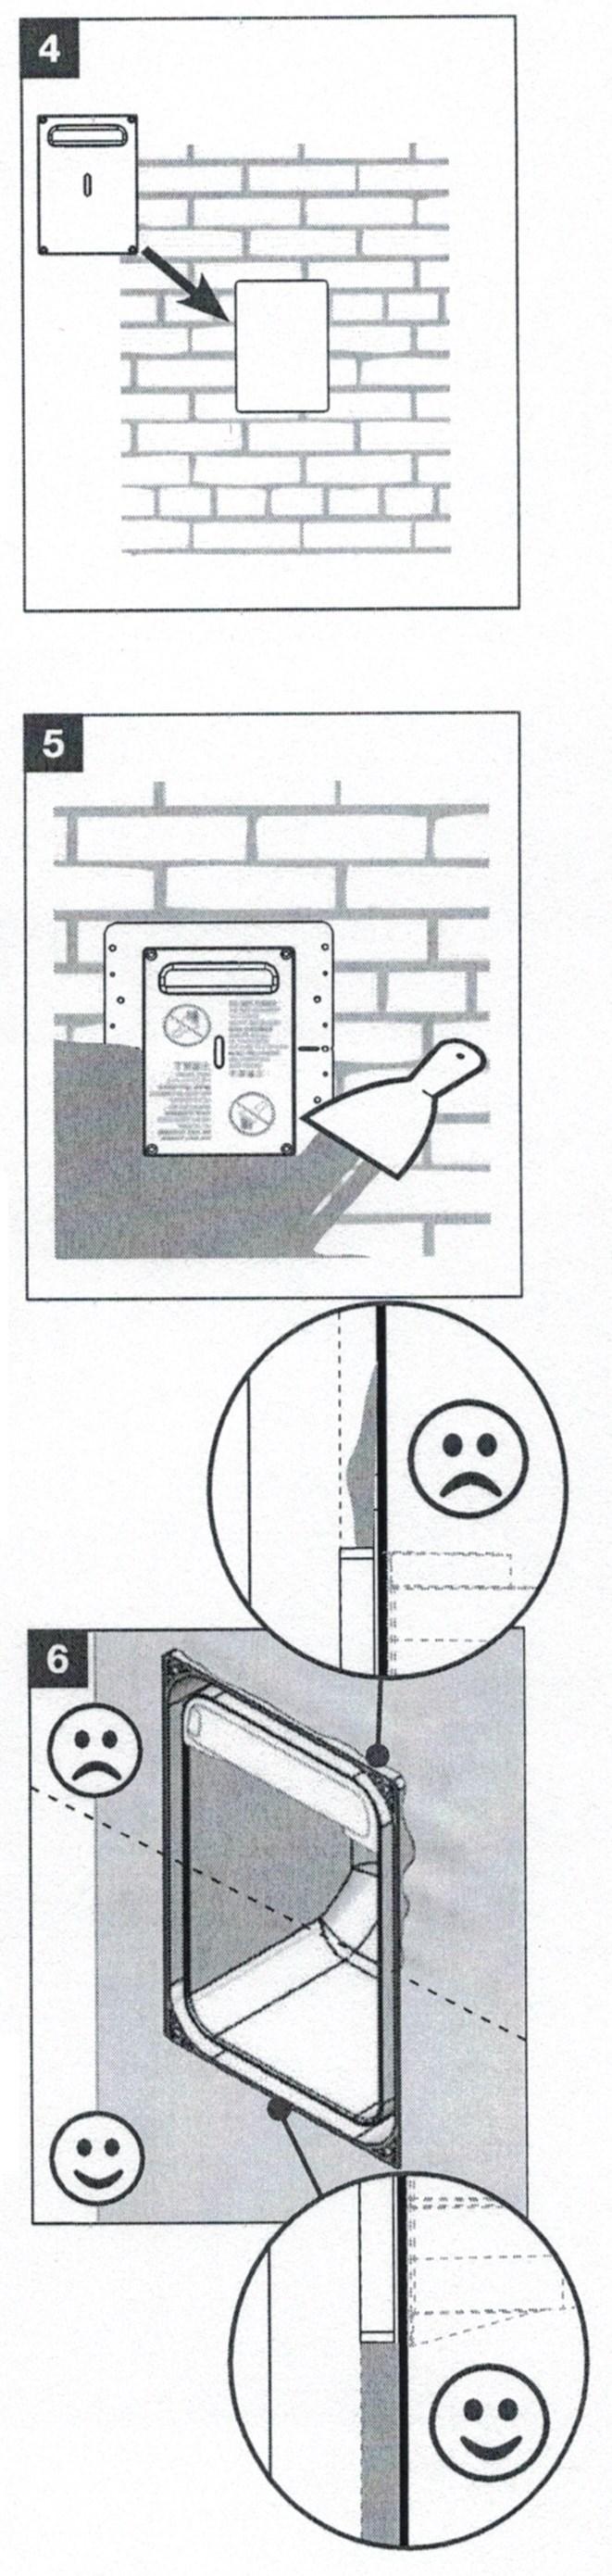 Metselwerk Gebruik het sjabloon in deze installatiehandleiding om een opening te maken in het metselwerk (figuur 4) Voer de achterzijde van de inbouwdoos in de wand en schroef